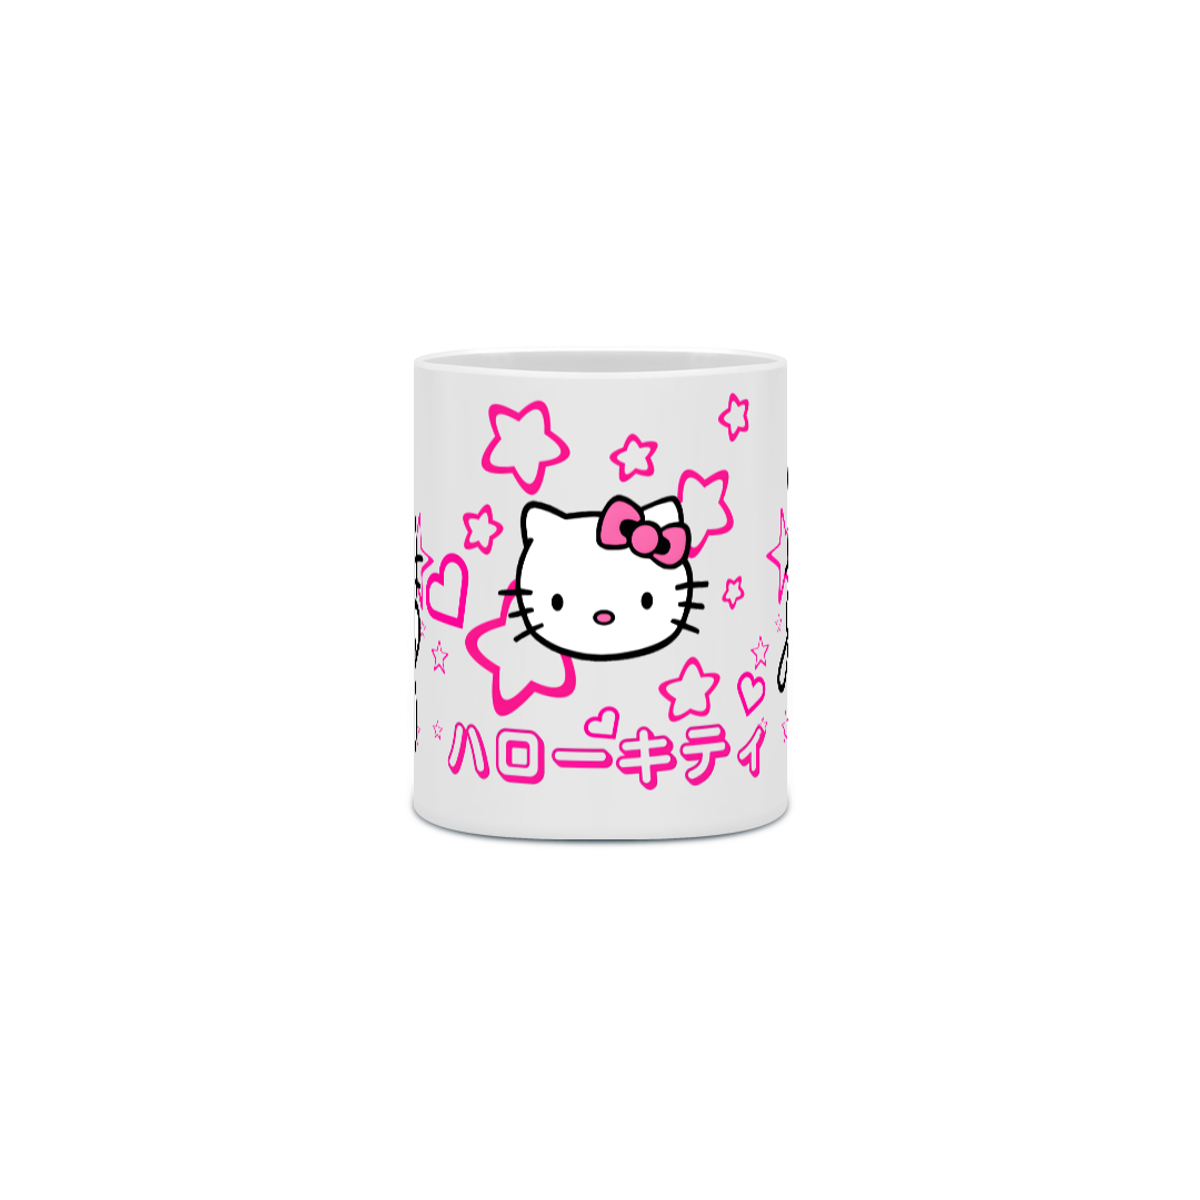 Nome do produto:  Caneca Hello Kitty